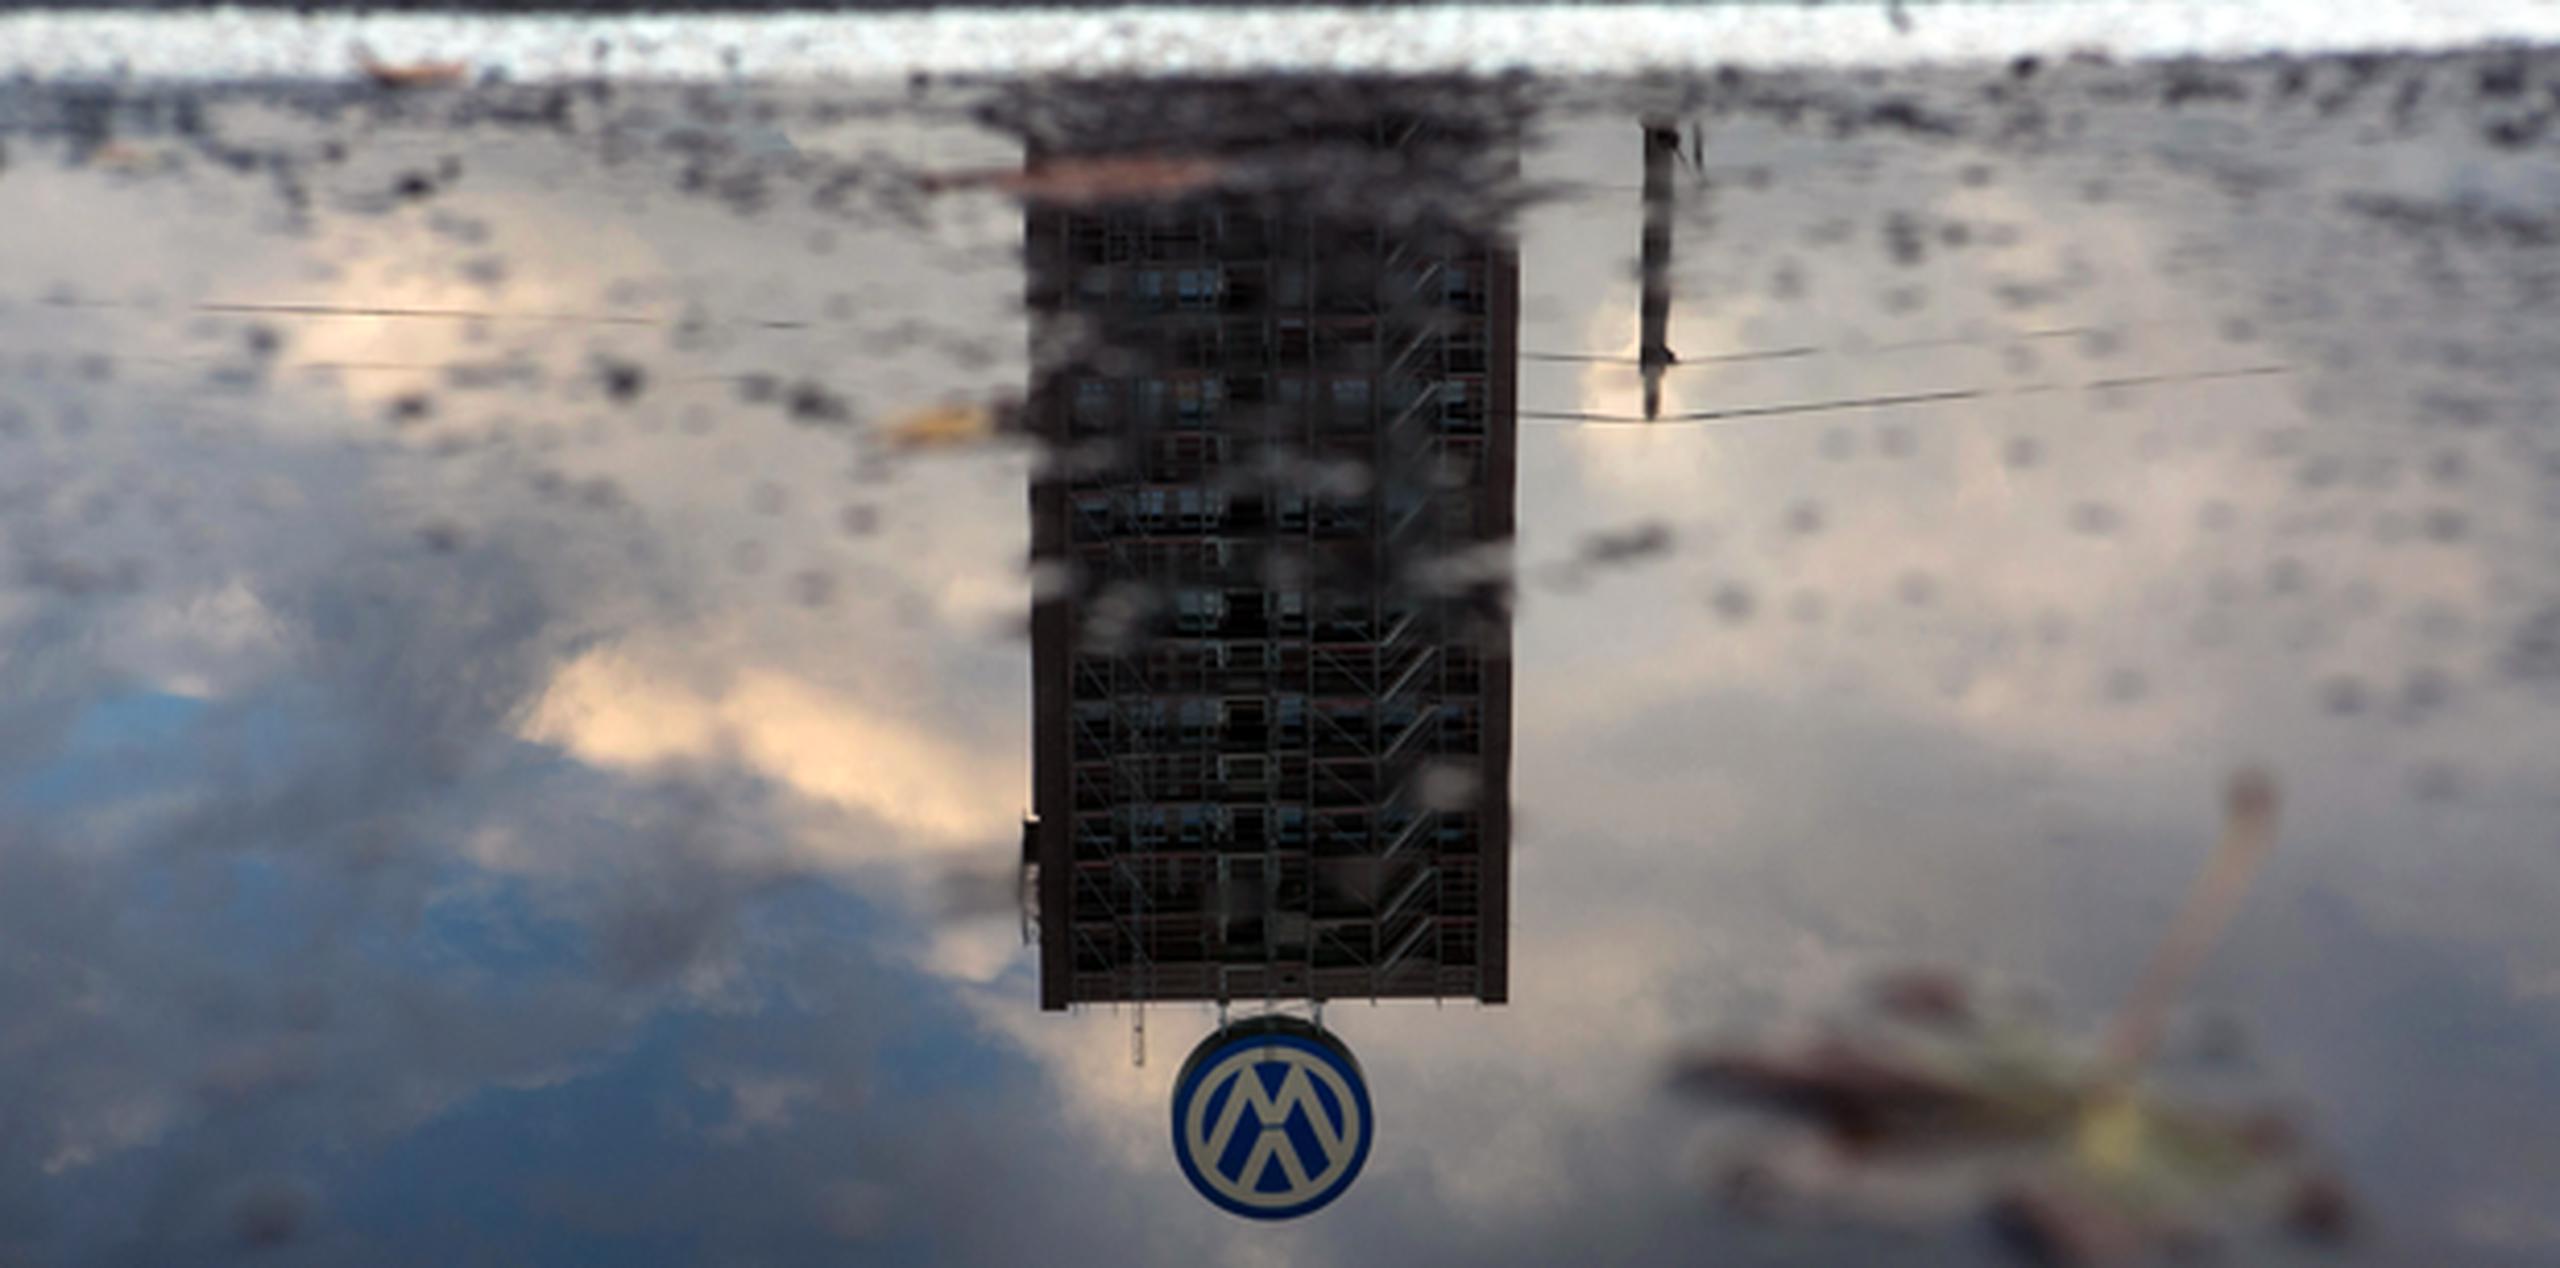 La Agencia estadounidense de Protección Medioambiental reveló el viernes que el software secreto hacía que los modelos entre 2009 y 2015 de autos Volkswagen con motores diésel de 2.0 litros contaminaran menos durante las pruebas de emisiones que en su funcionamiento normal en carretera. (Bloomberg)